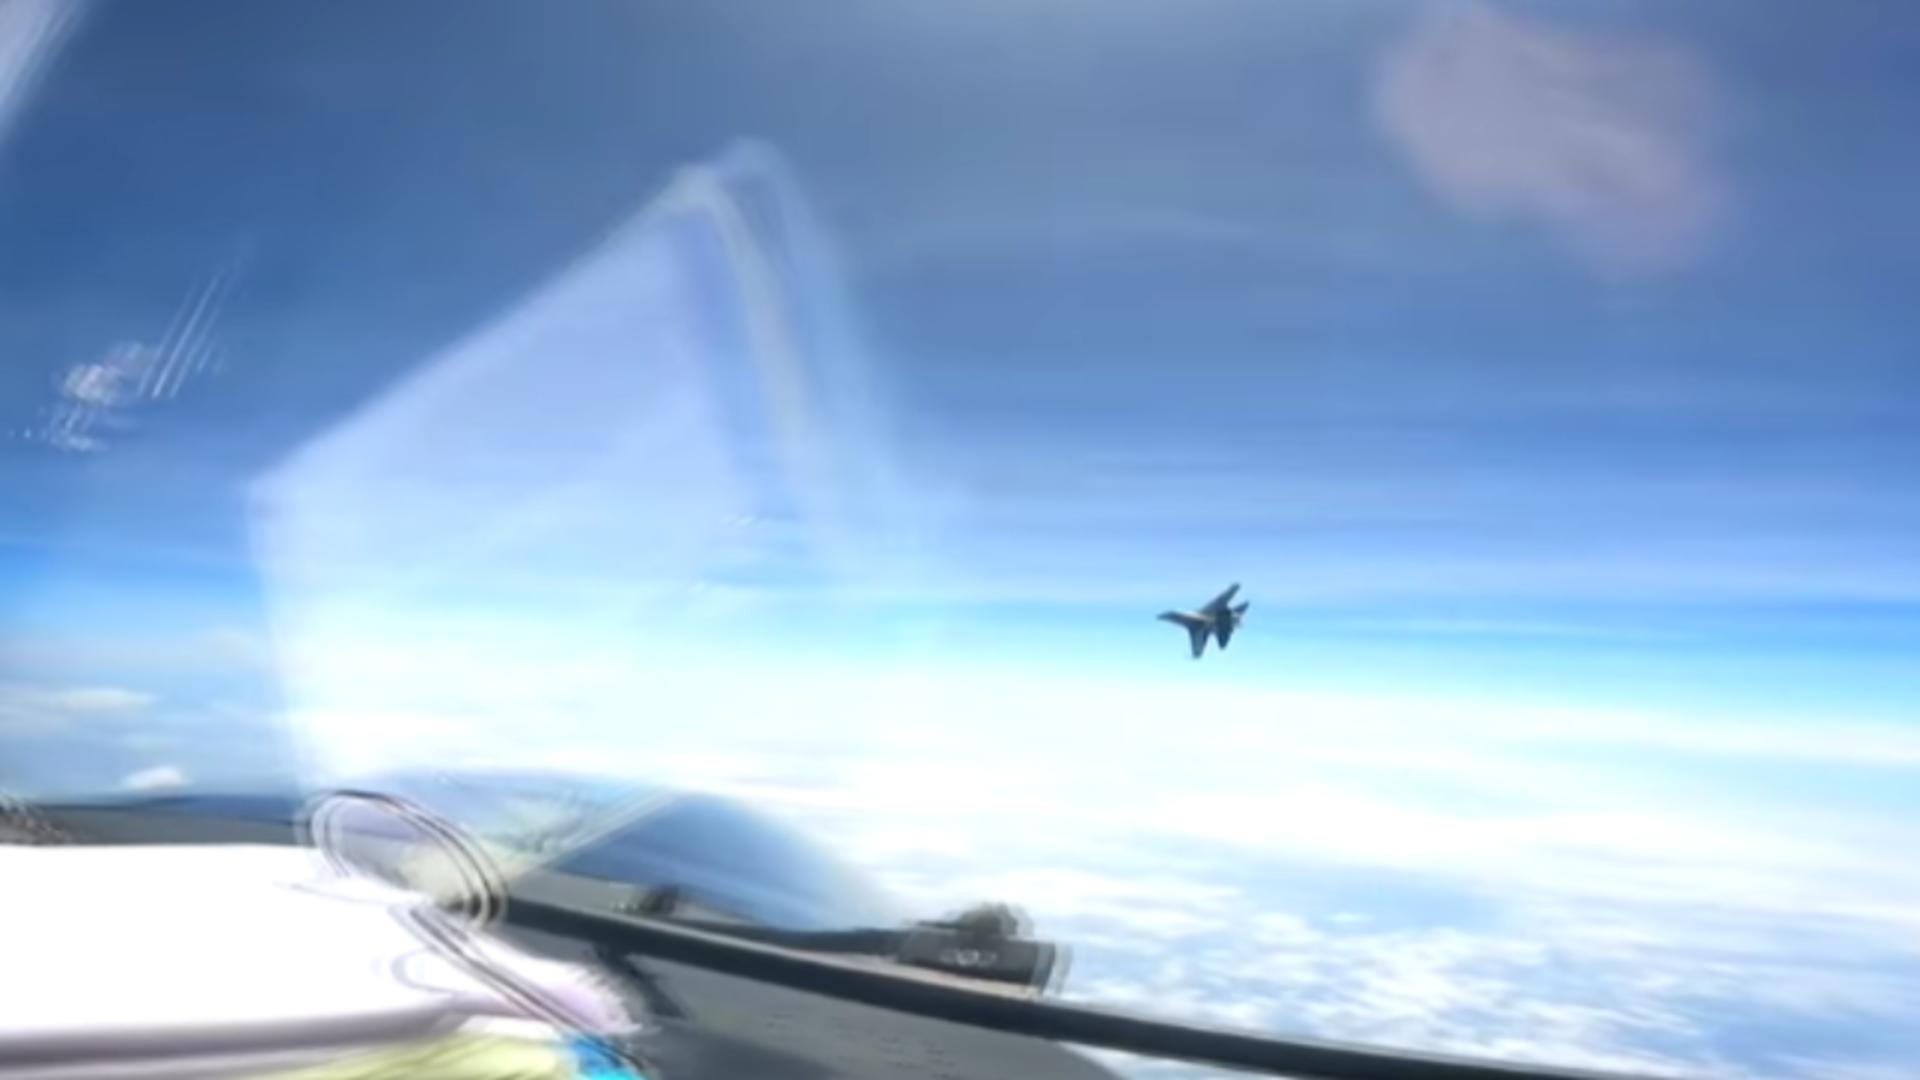 Tensiuni în aer deasupra Mării Chinei. VIDEO cu un avion chinez făcând o manevră agresivă către un avion american de recunoaștere 